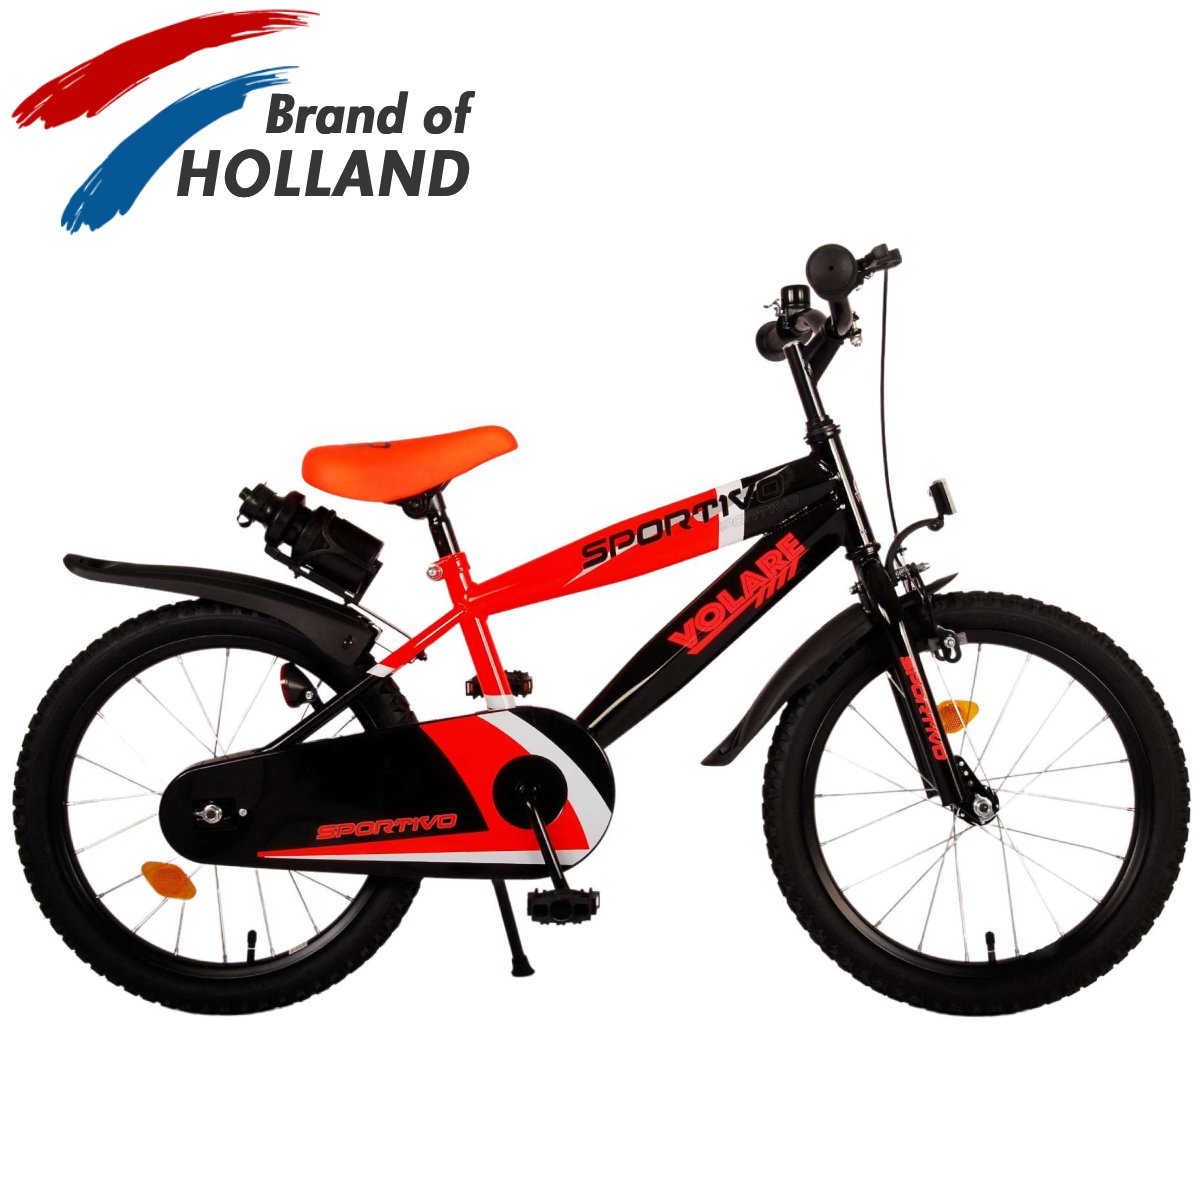 Vaikiškas dviratis VOLARE Sportivo, 18 dydis, juodas/oranžinis - 1